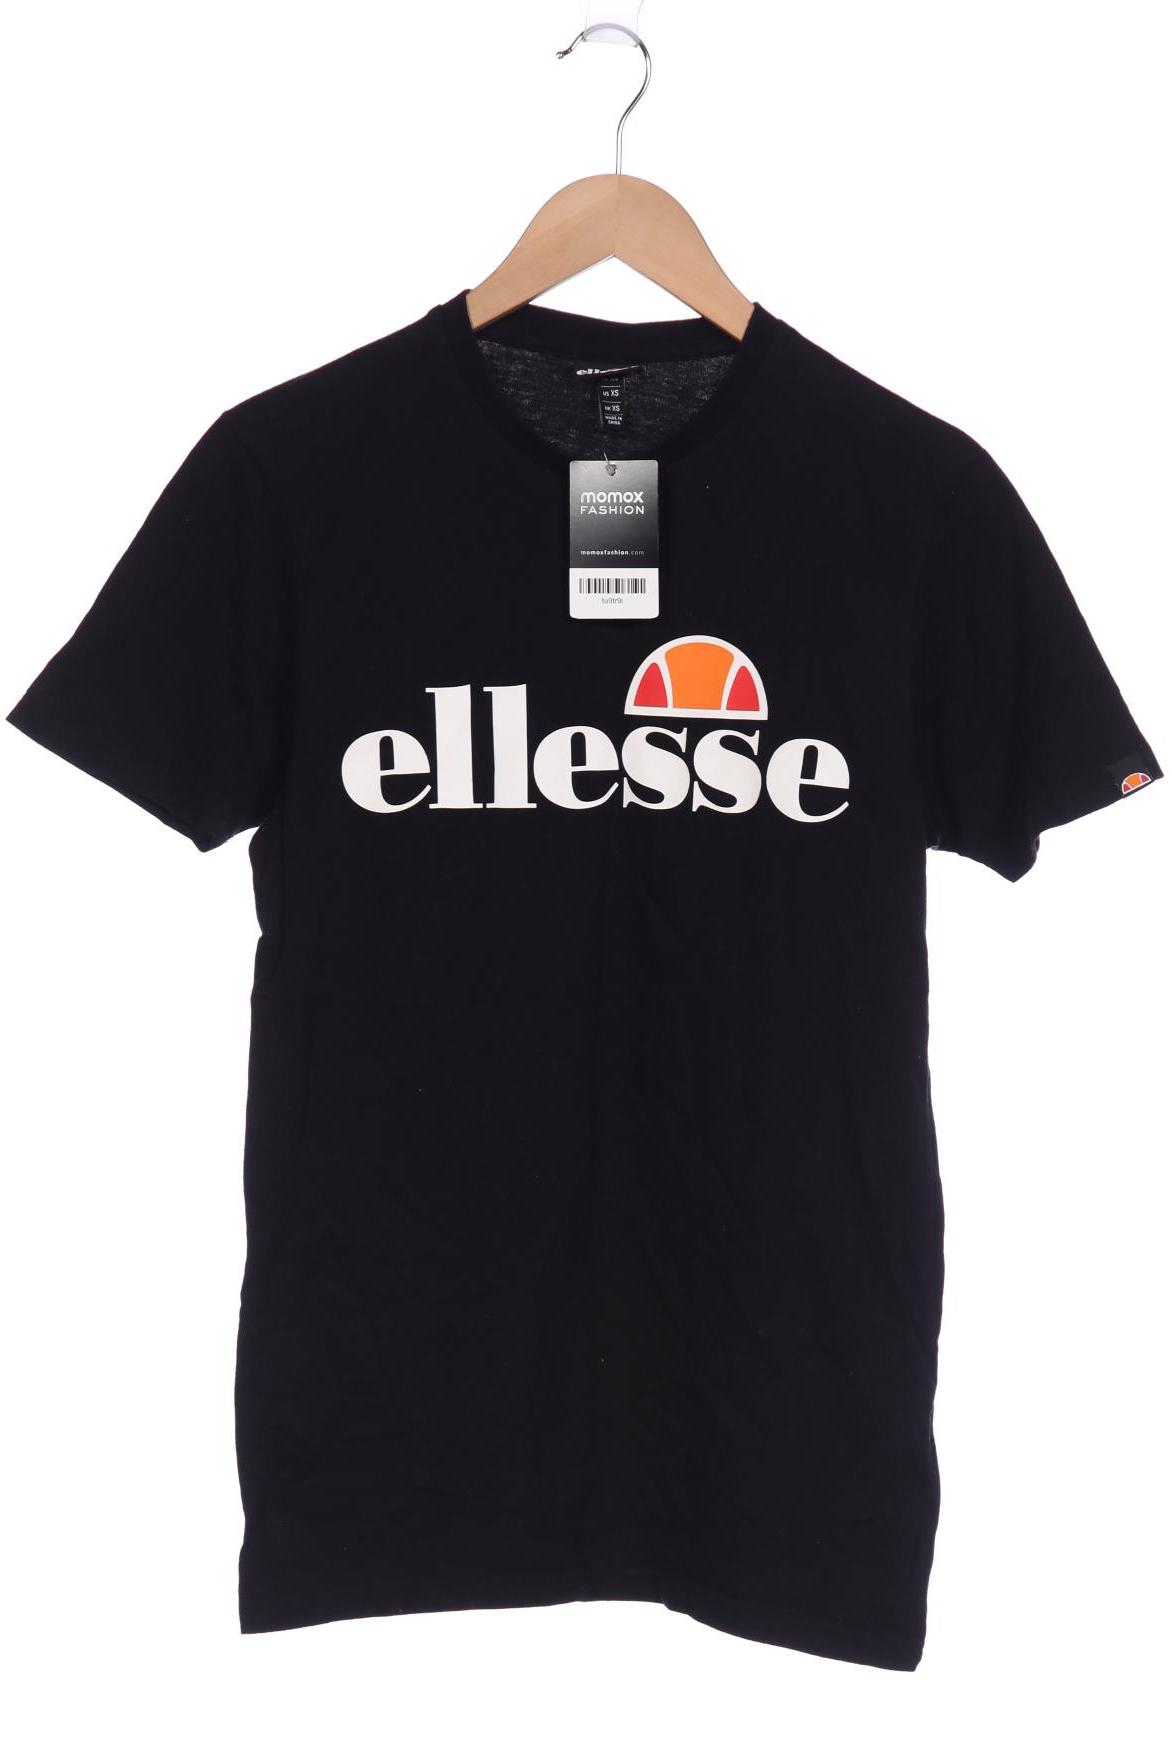 ellesse Herren T-Shirt, schwarz von Ellesse